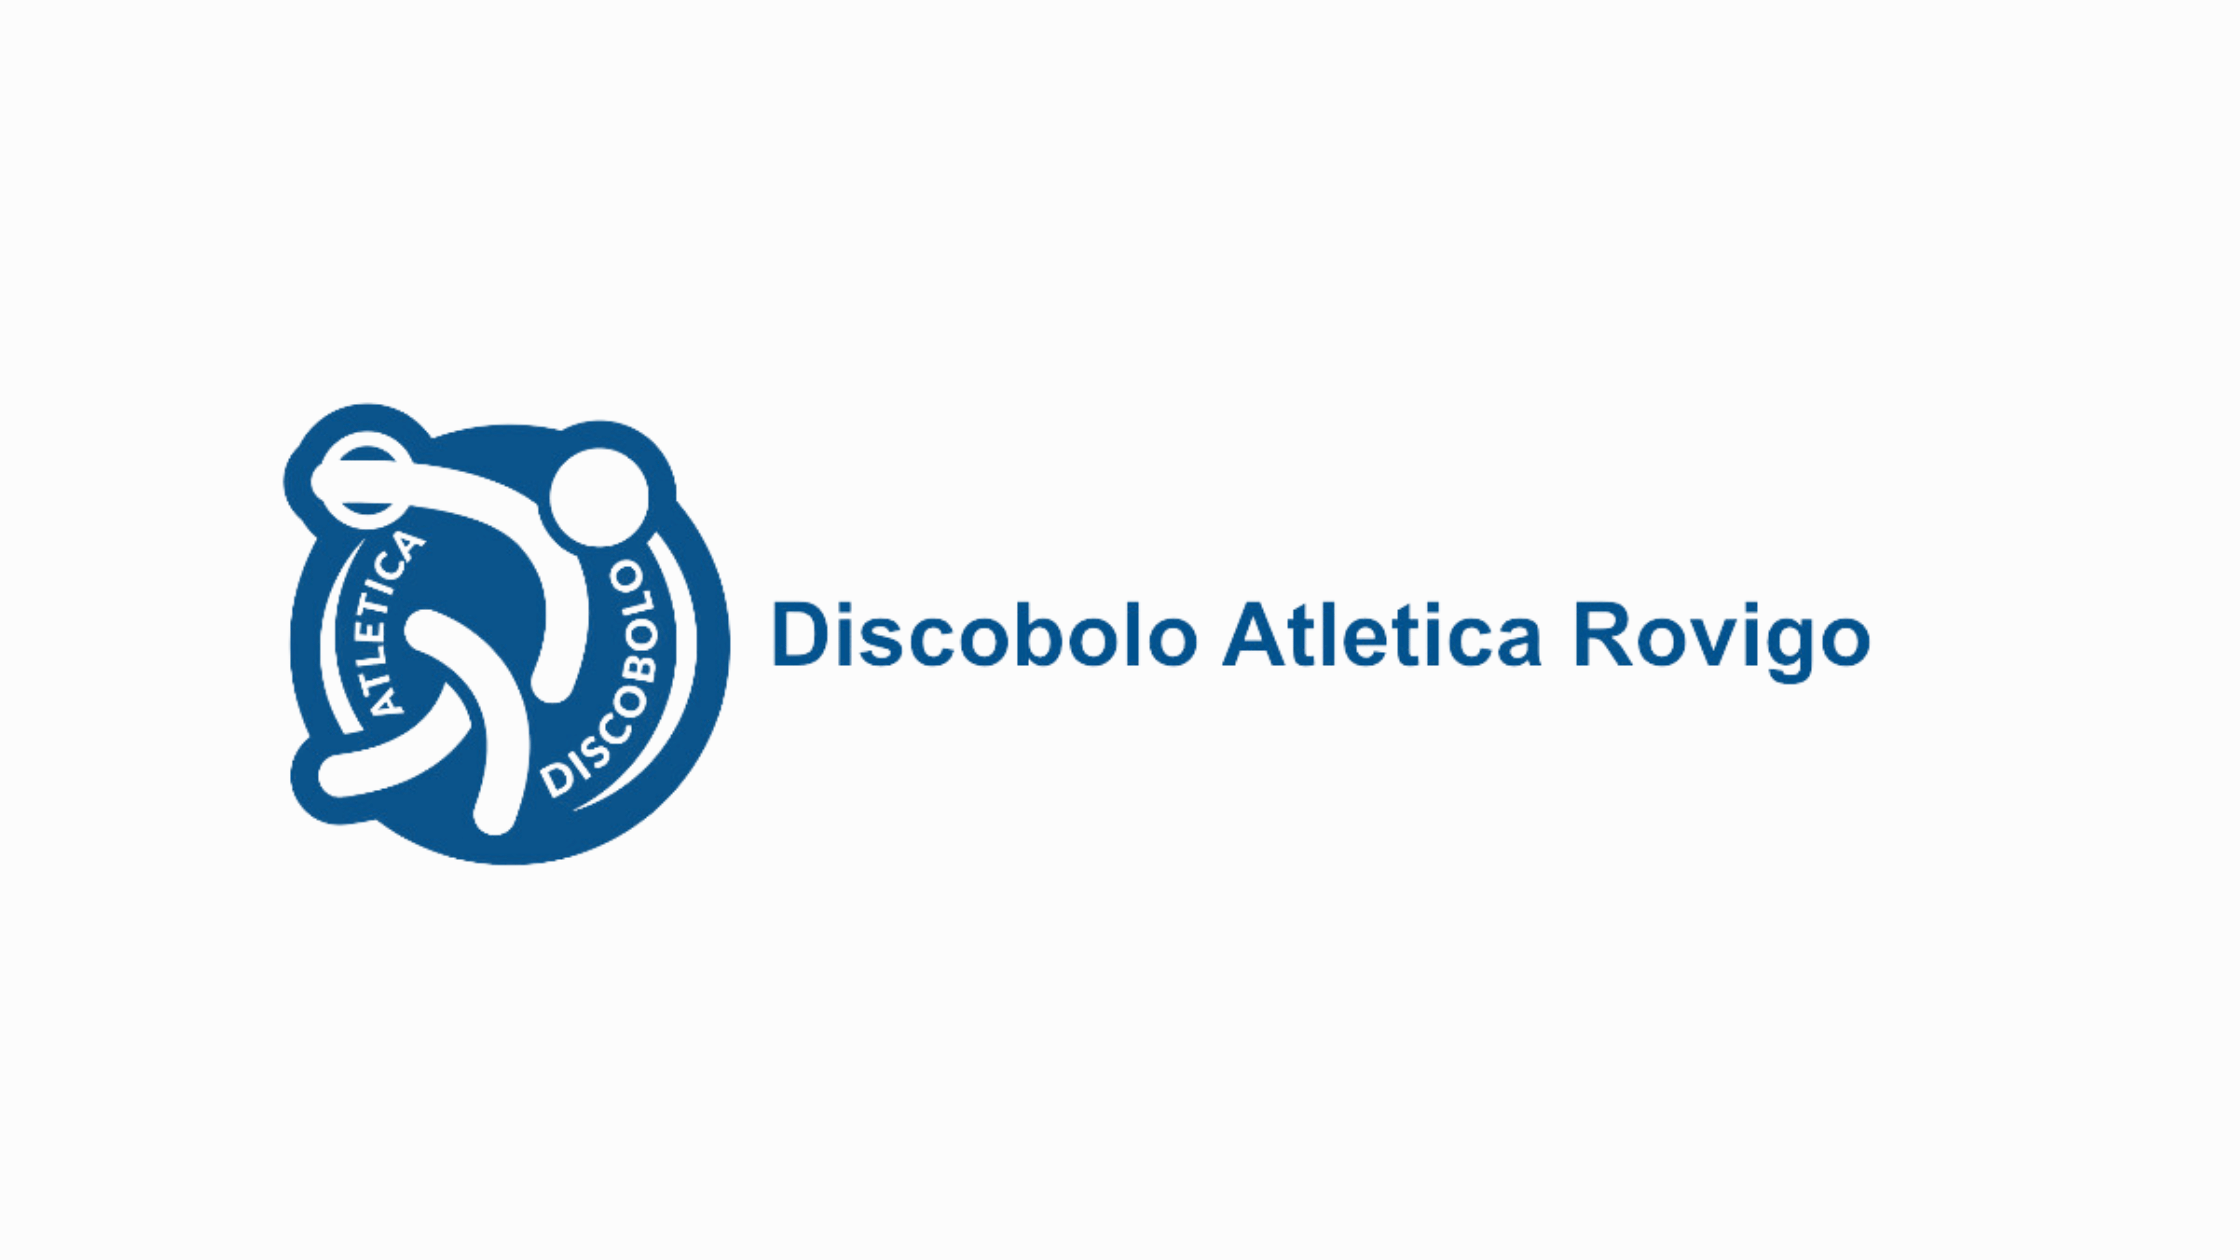 Discobolo Atletica Rovigo